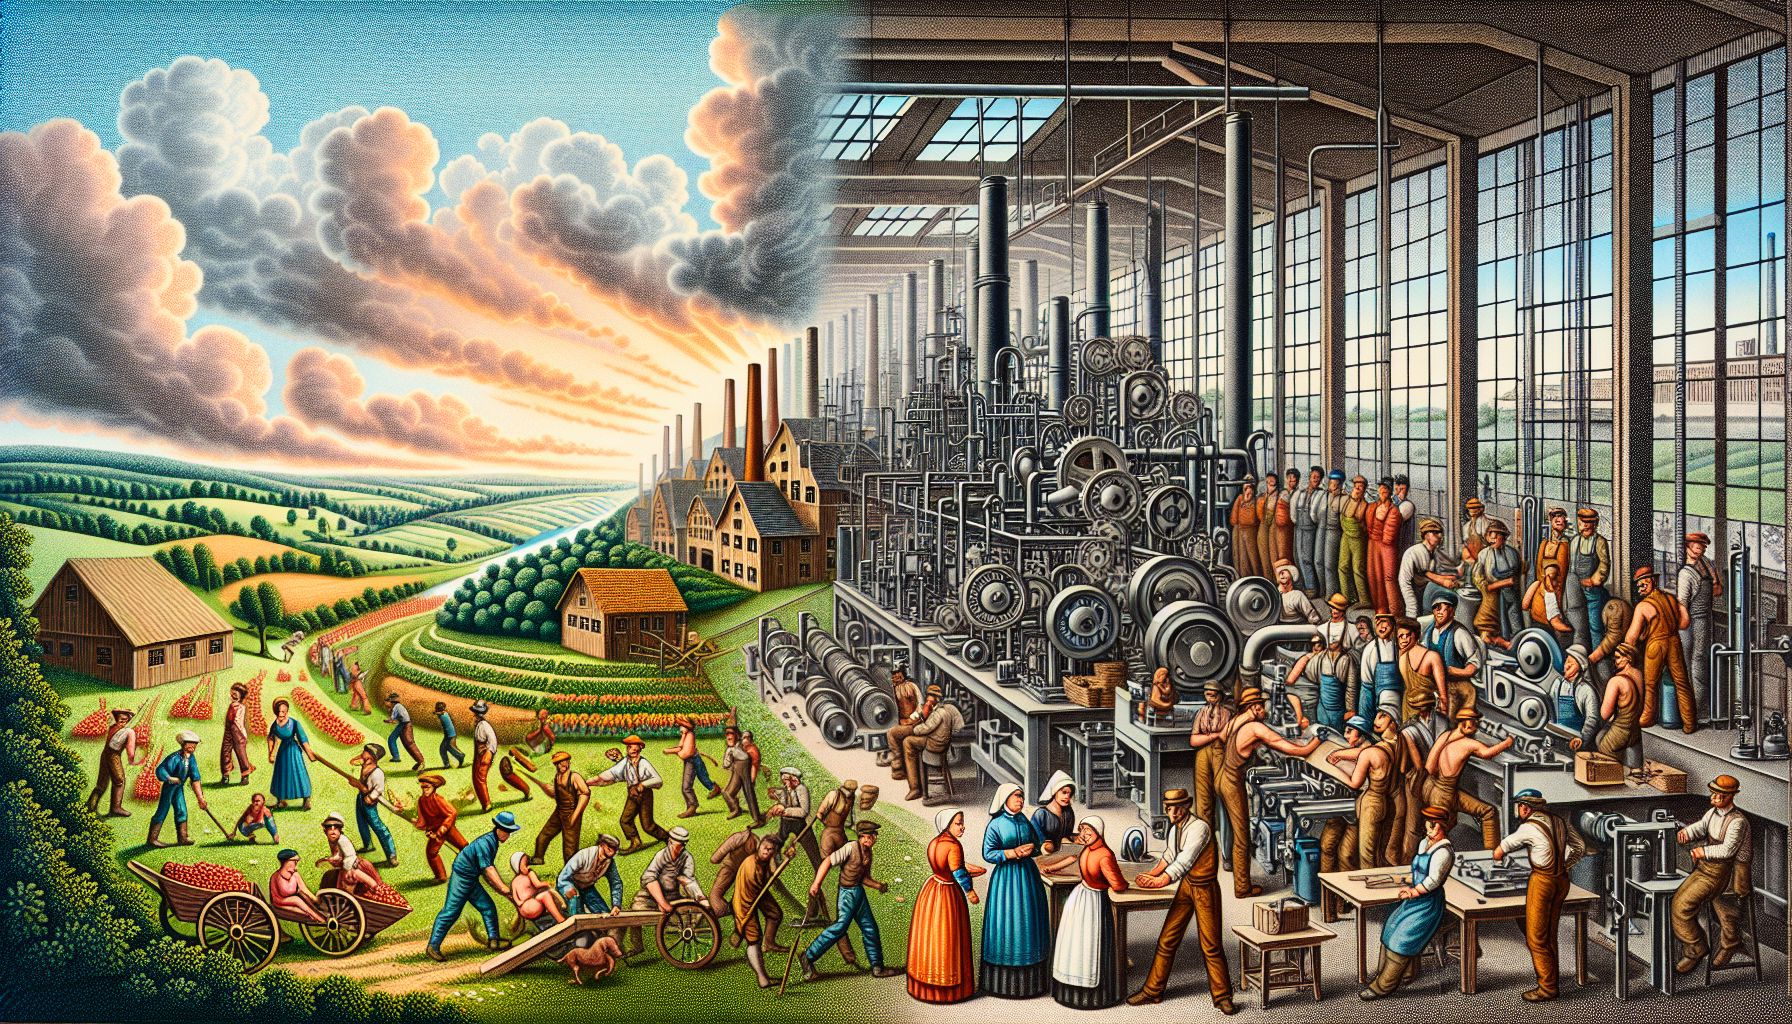 Industrialiseringens påvirkning på produktion